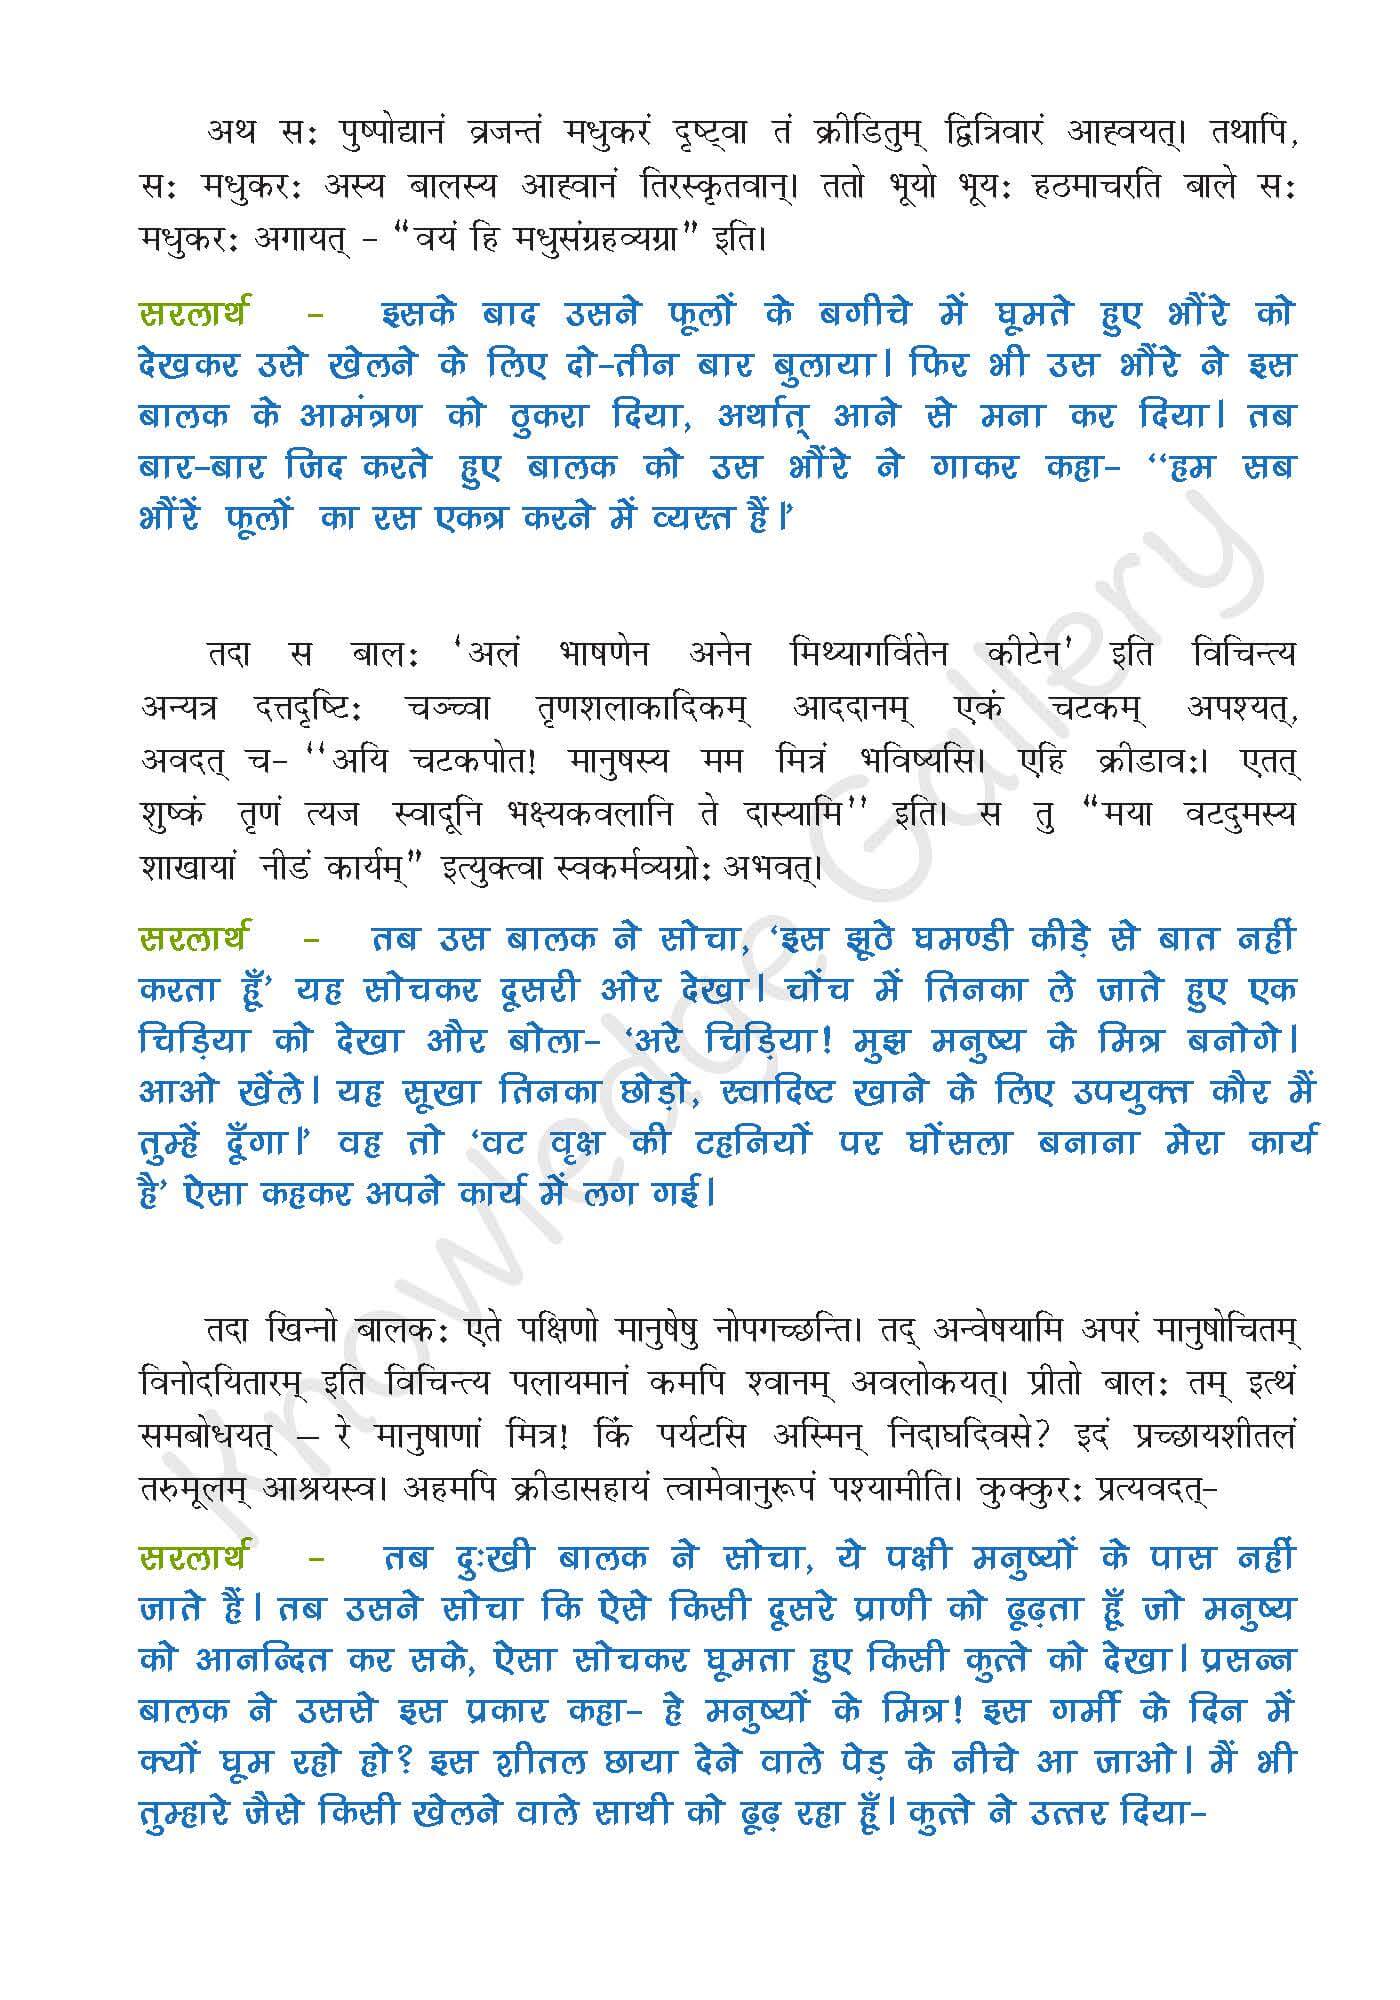 NCERT Solution For Class 9 Sanskrit Chapter 5 part 2